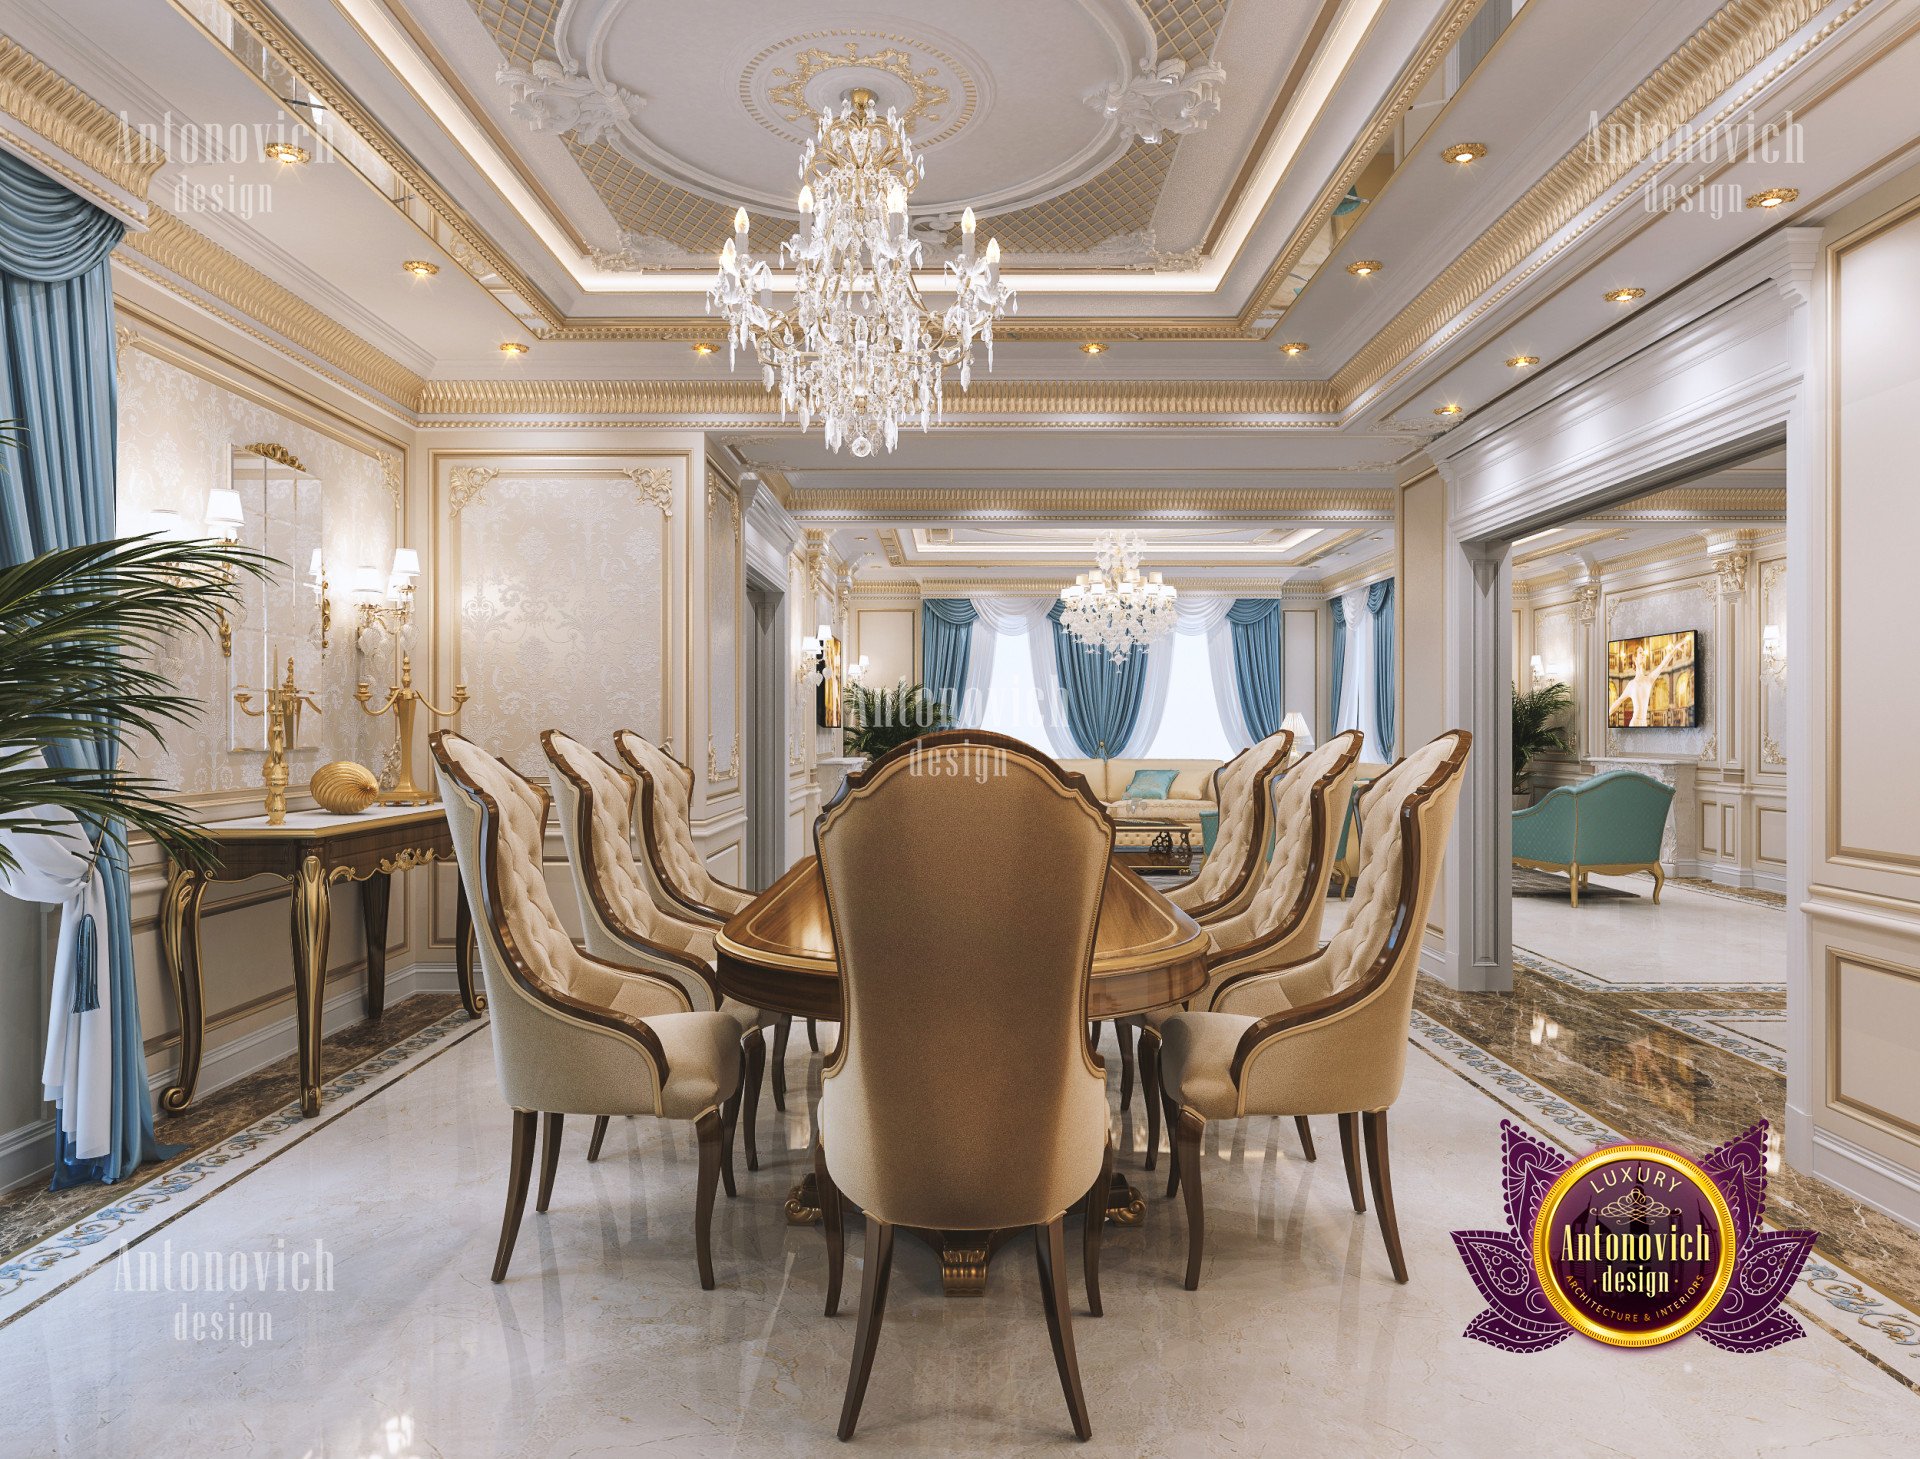 Classic dining room decoration - luxury interior design ...